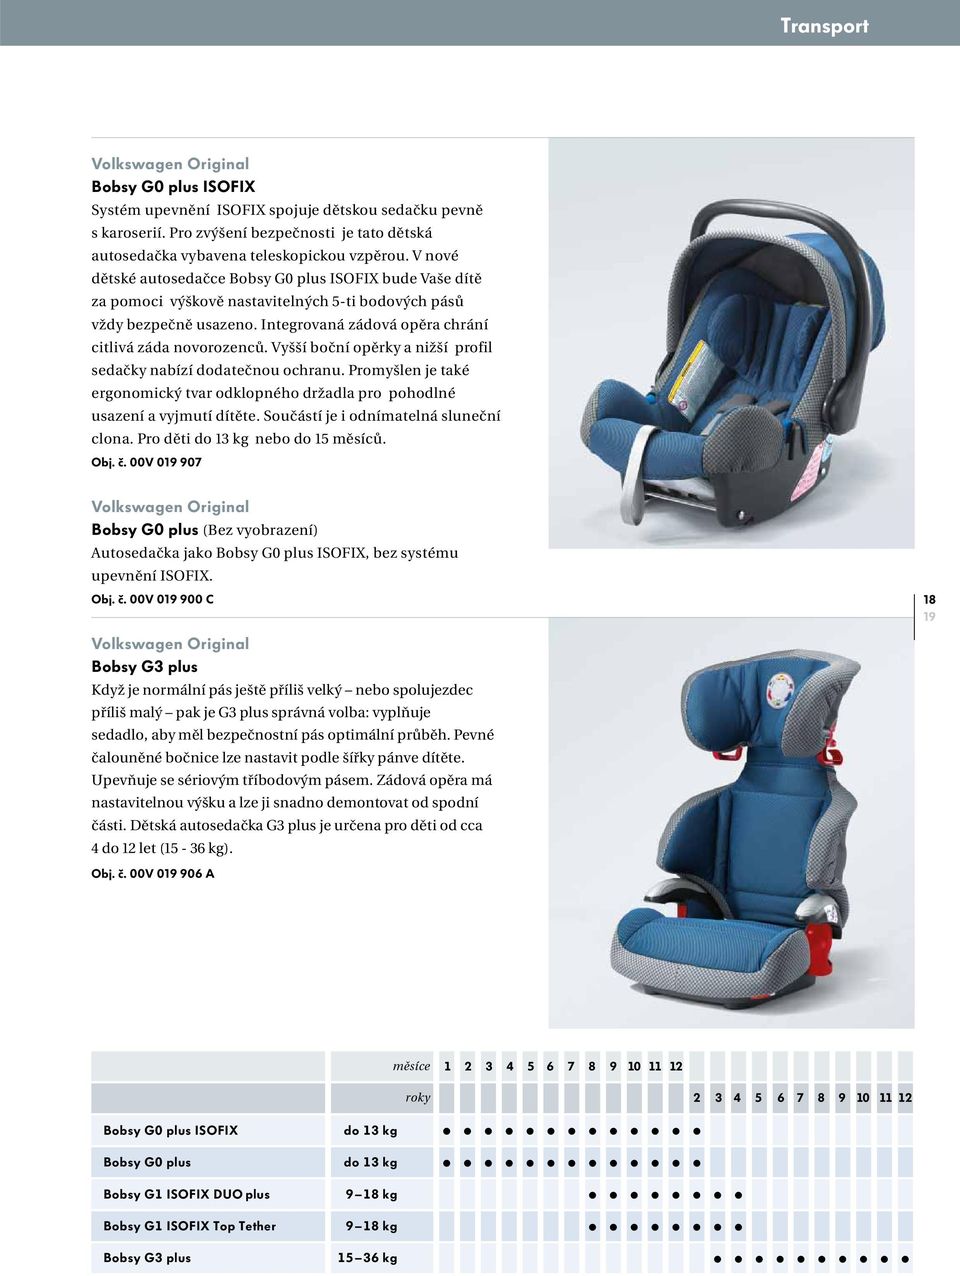 Vyšší boční opěrky a nižší profil sedačky nabízí dodatečnou ochranu. Promyšlen je také ergonomický tvar odklopného držadla pro pohodlné usazení a vyjmutí dítěte.